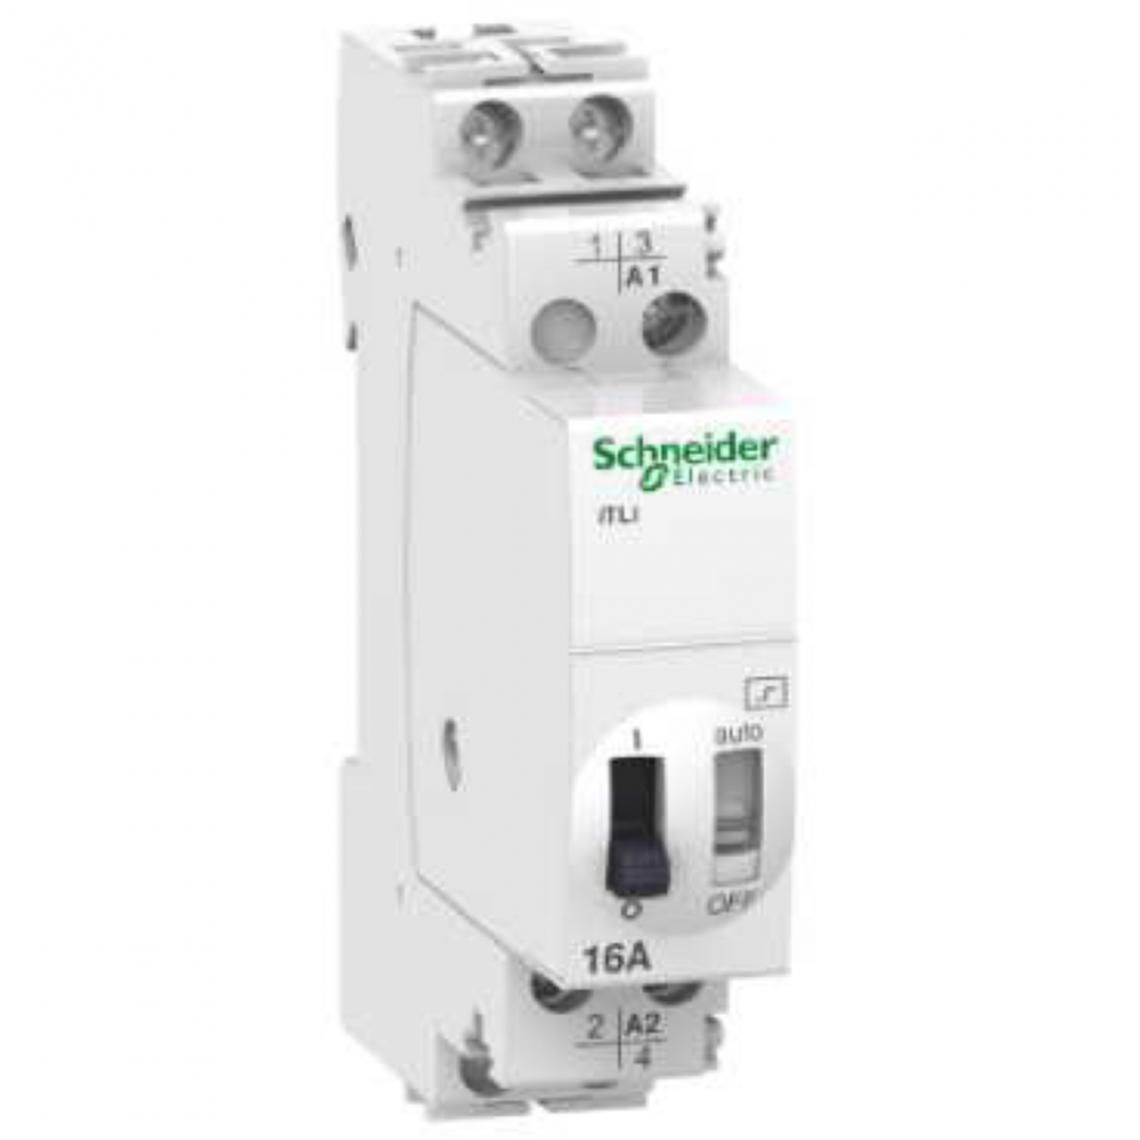 Schneider Electric - télérupteur - schneider acti9 - 16a - no+nf - 110 à 240v - schneider electric a9c30815 - Télérupteurs, minuteries et horloges